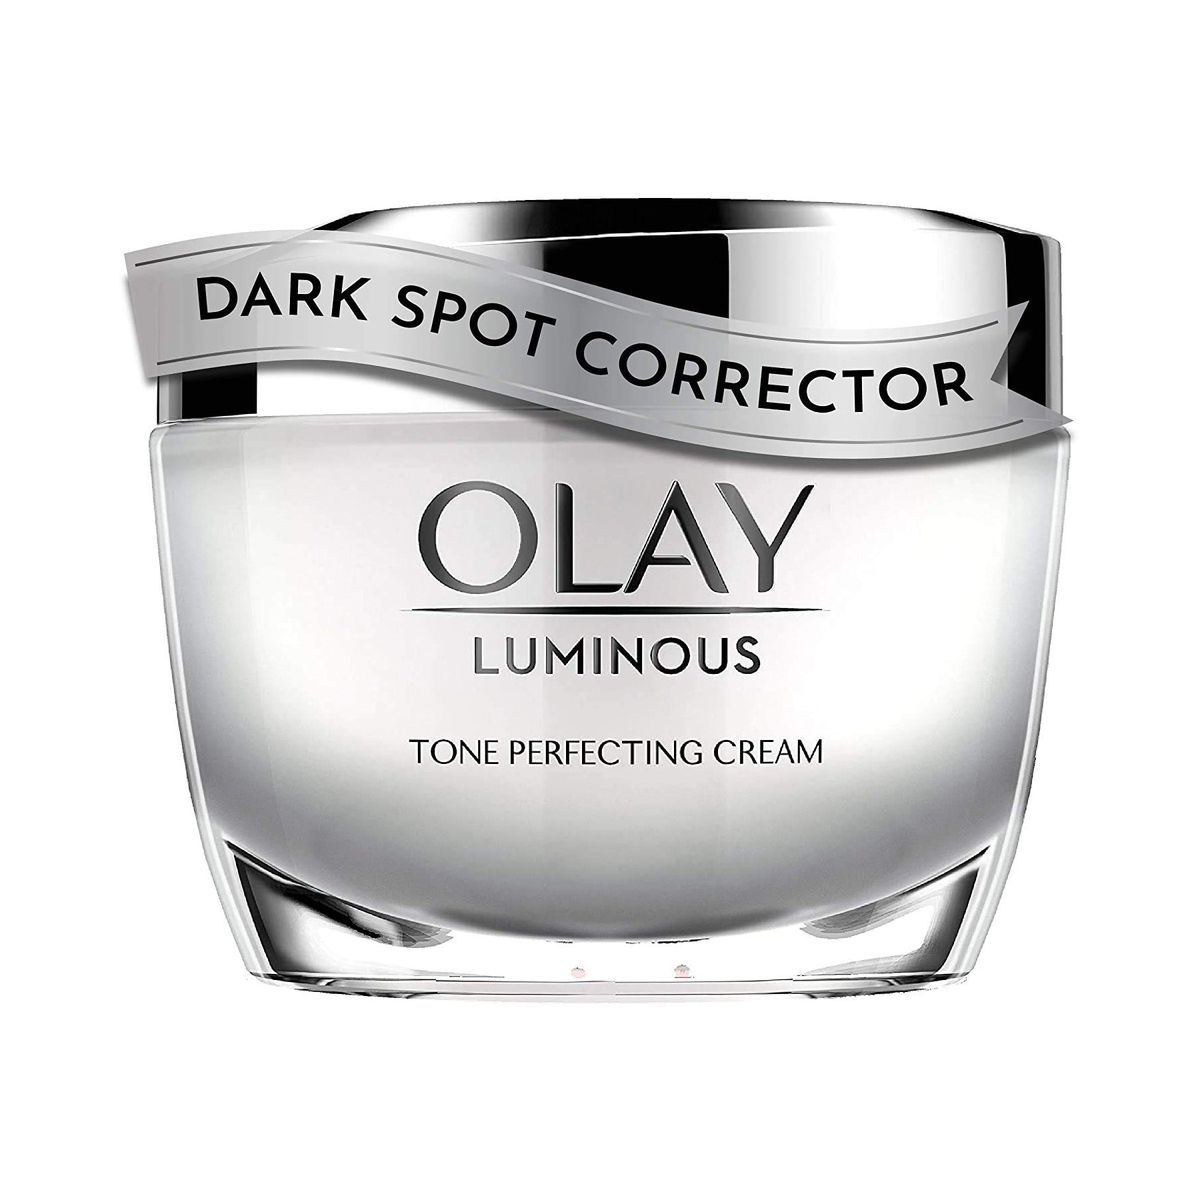 Dark Spot Corrector by Olay